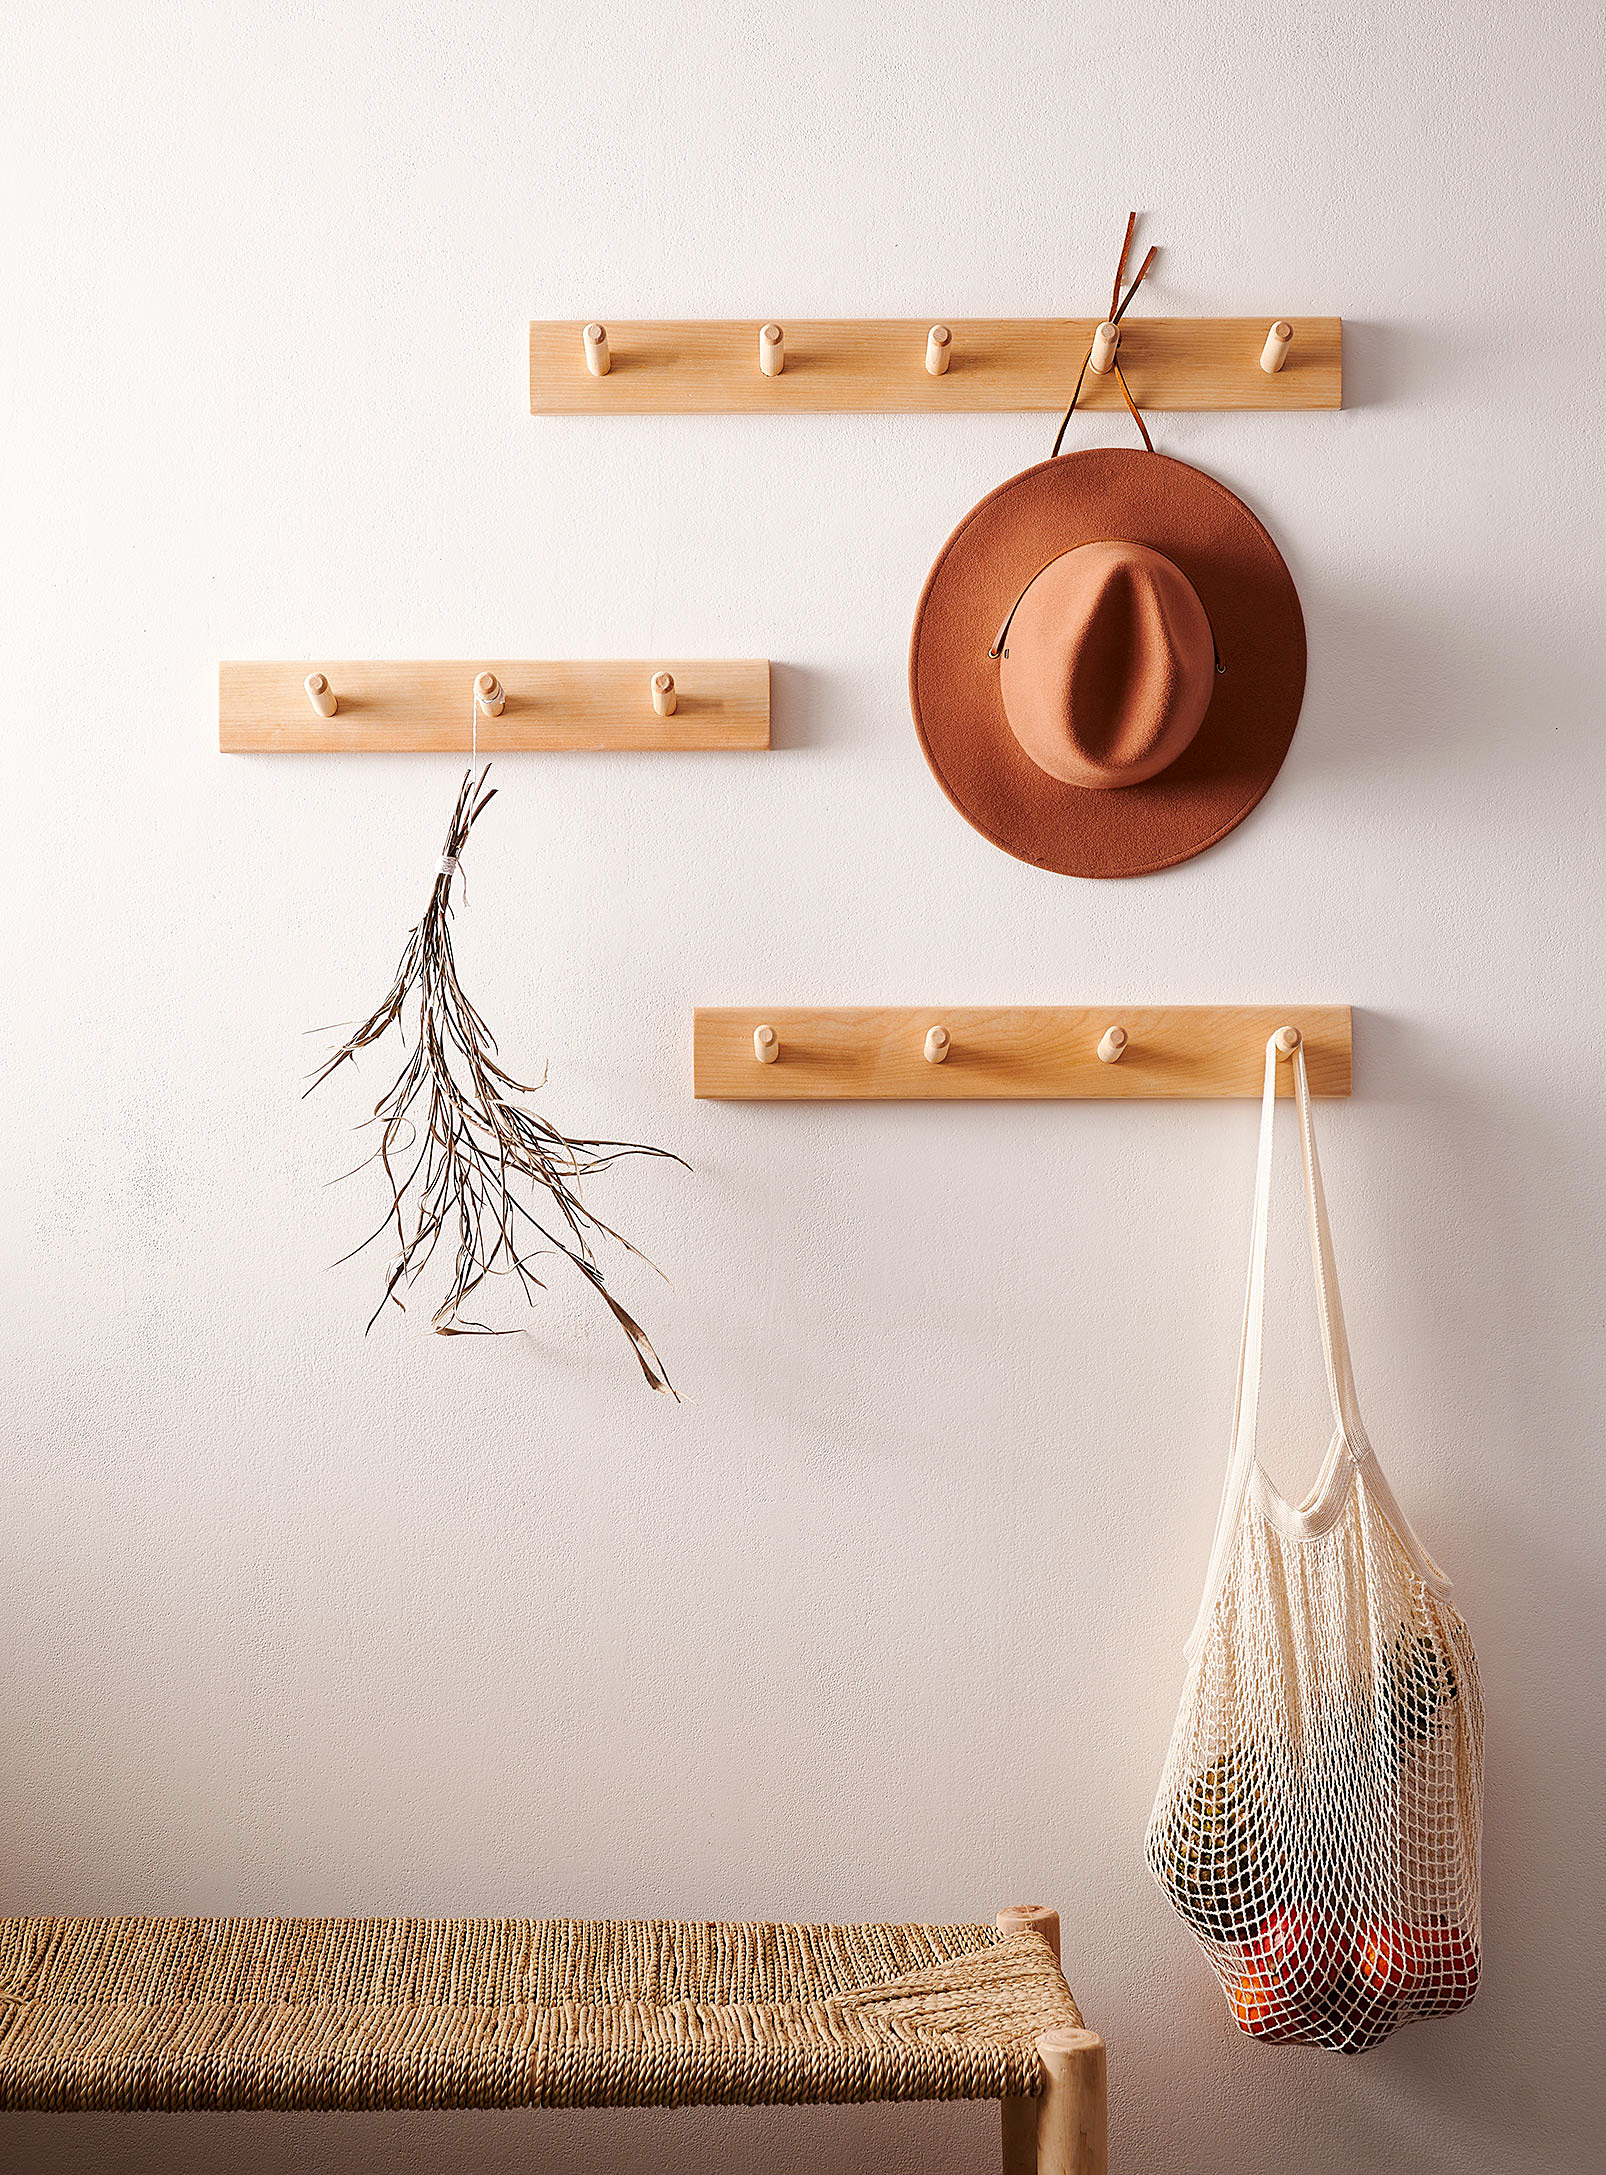 Livcan Design - Peg hooks wall-mounted coat rack